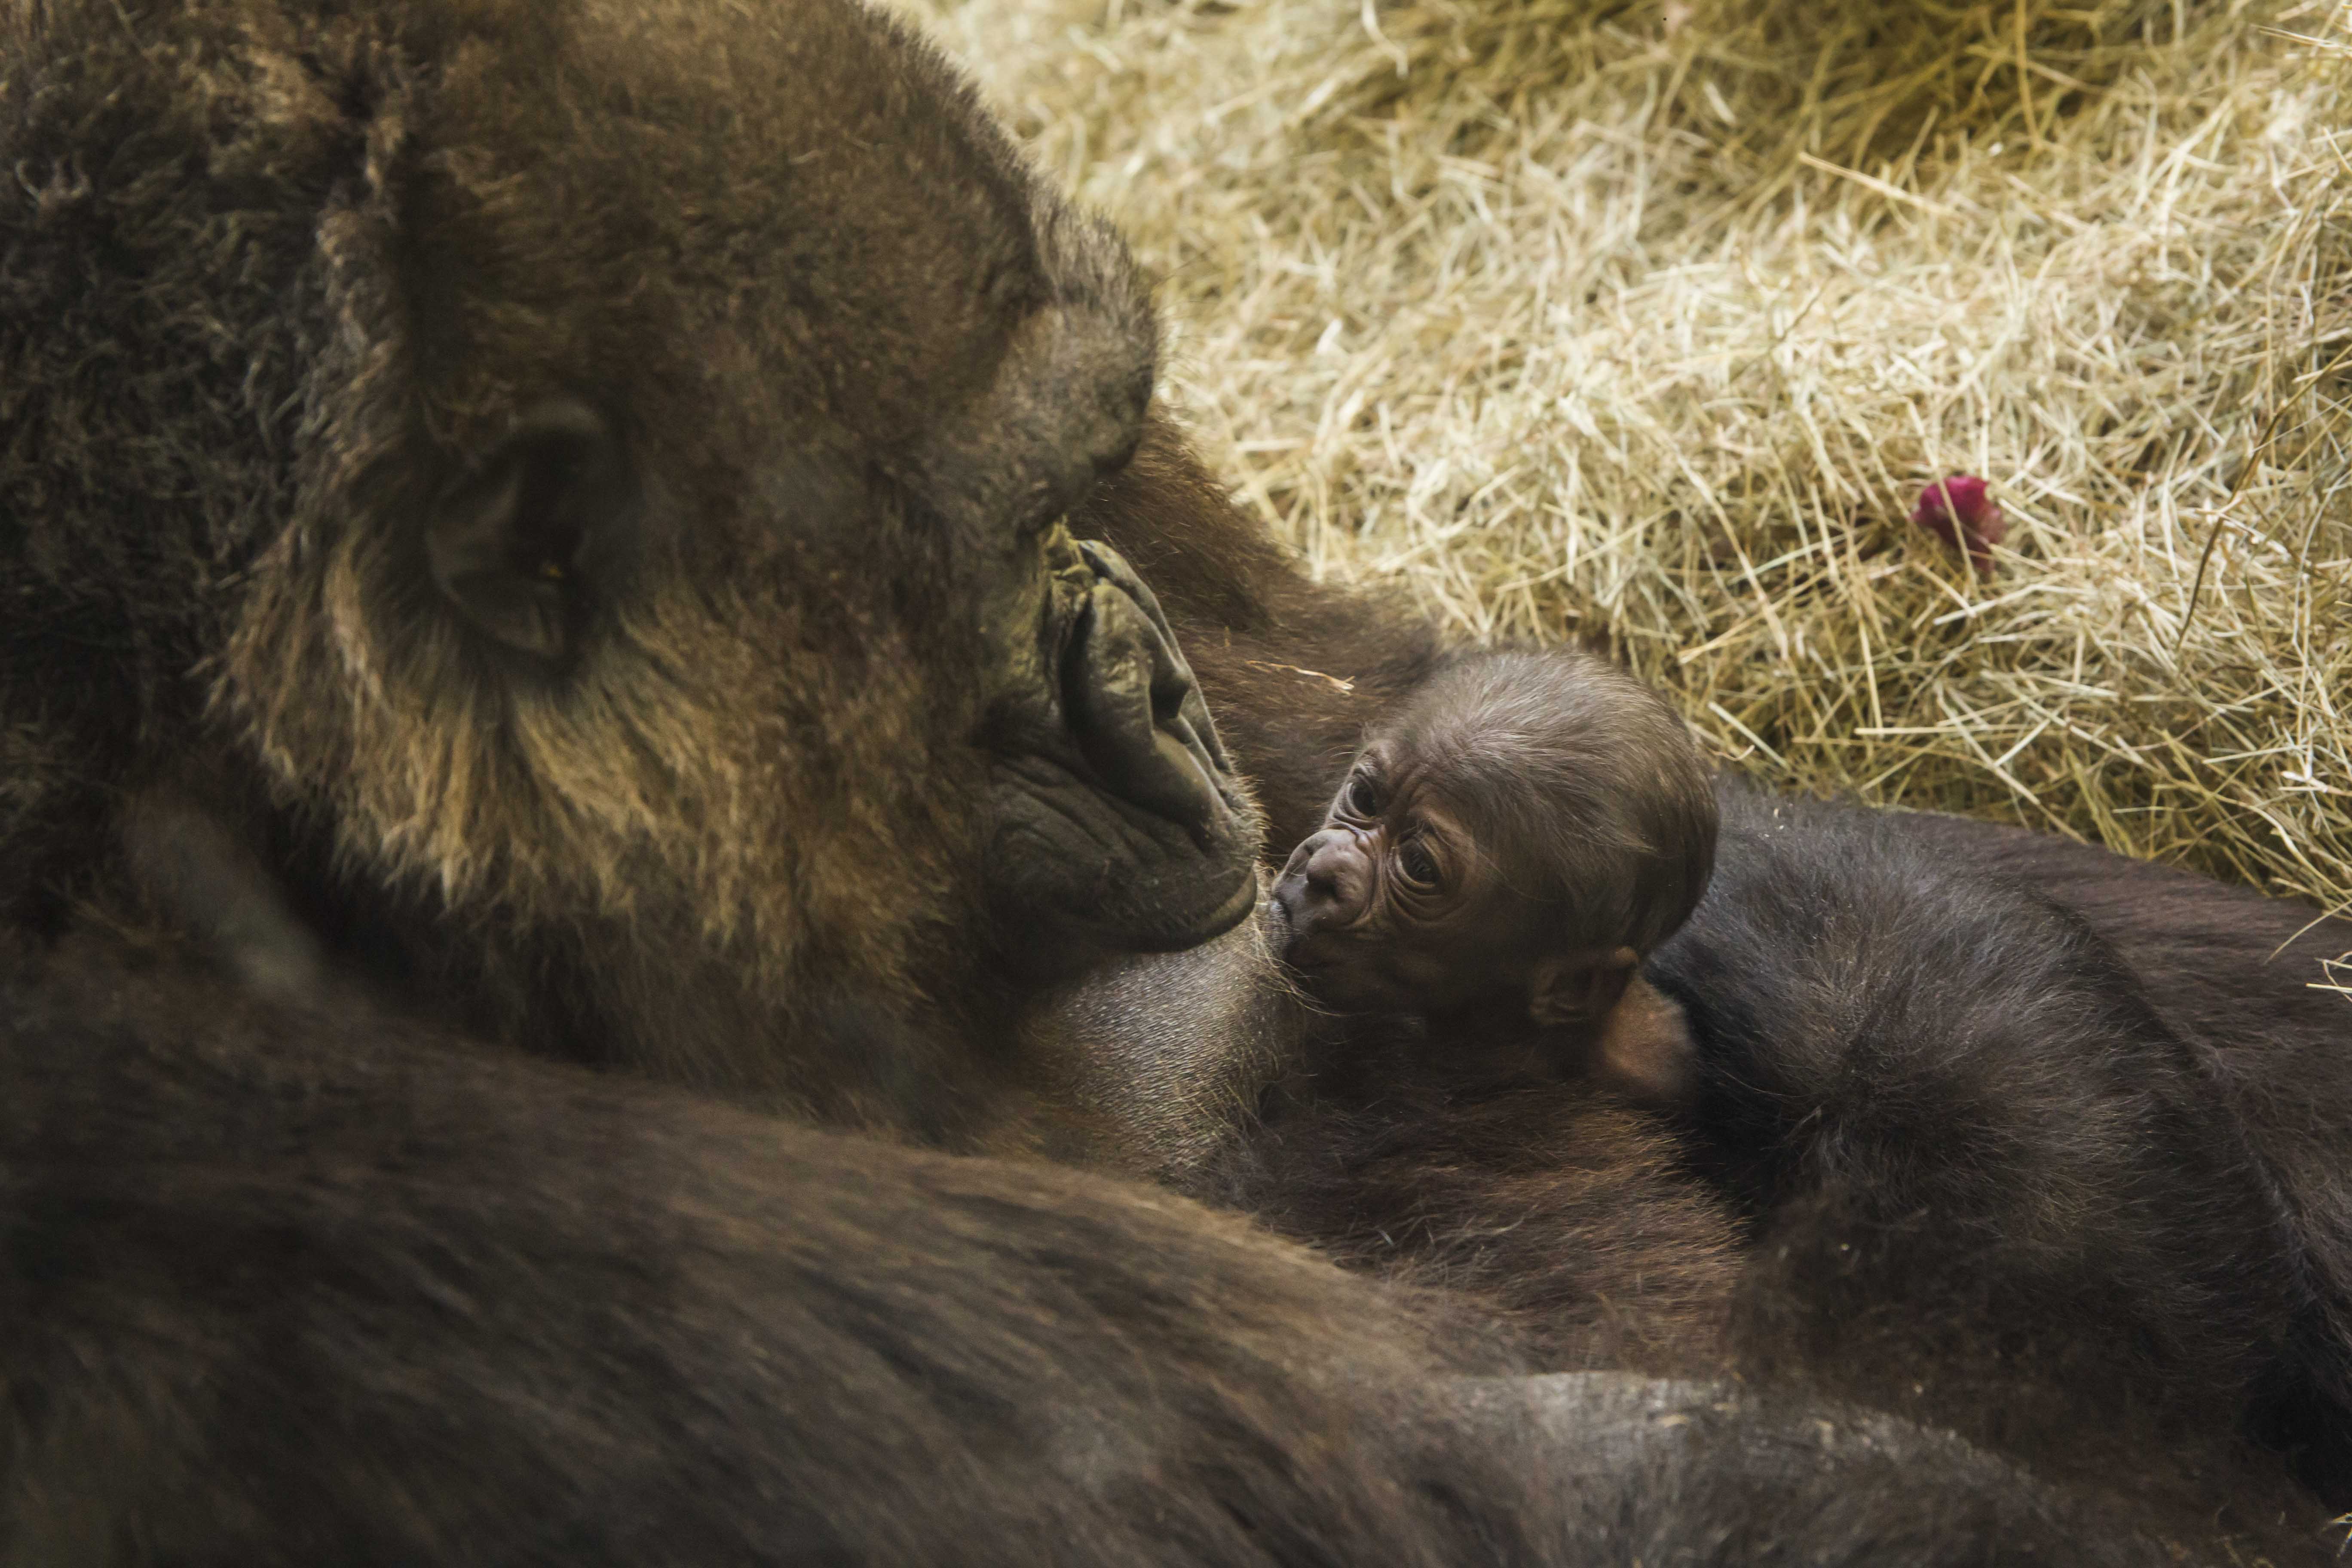 Endangered baby gorilla born at Busch Gardens